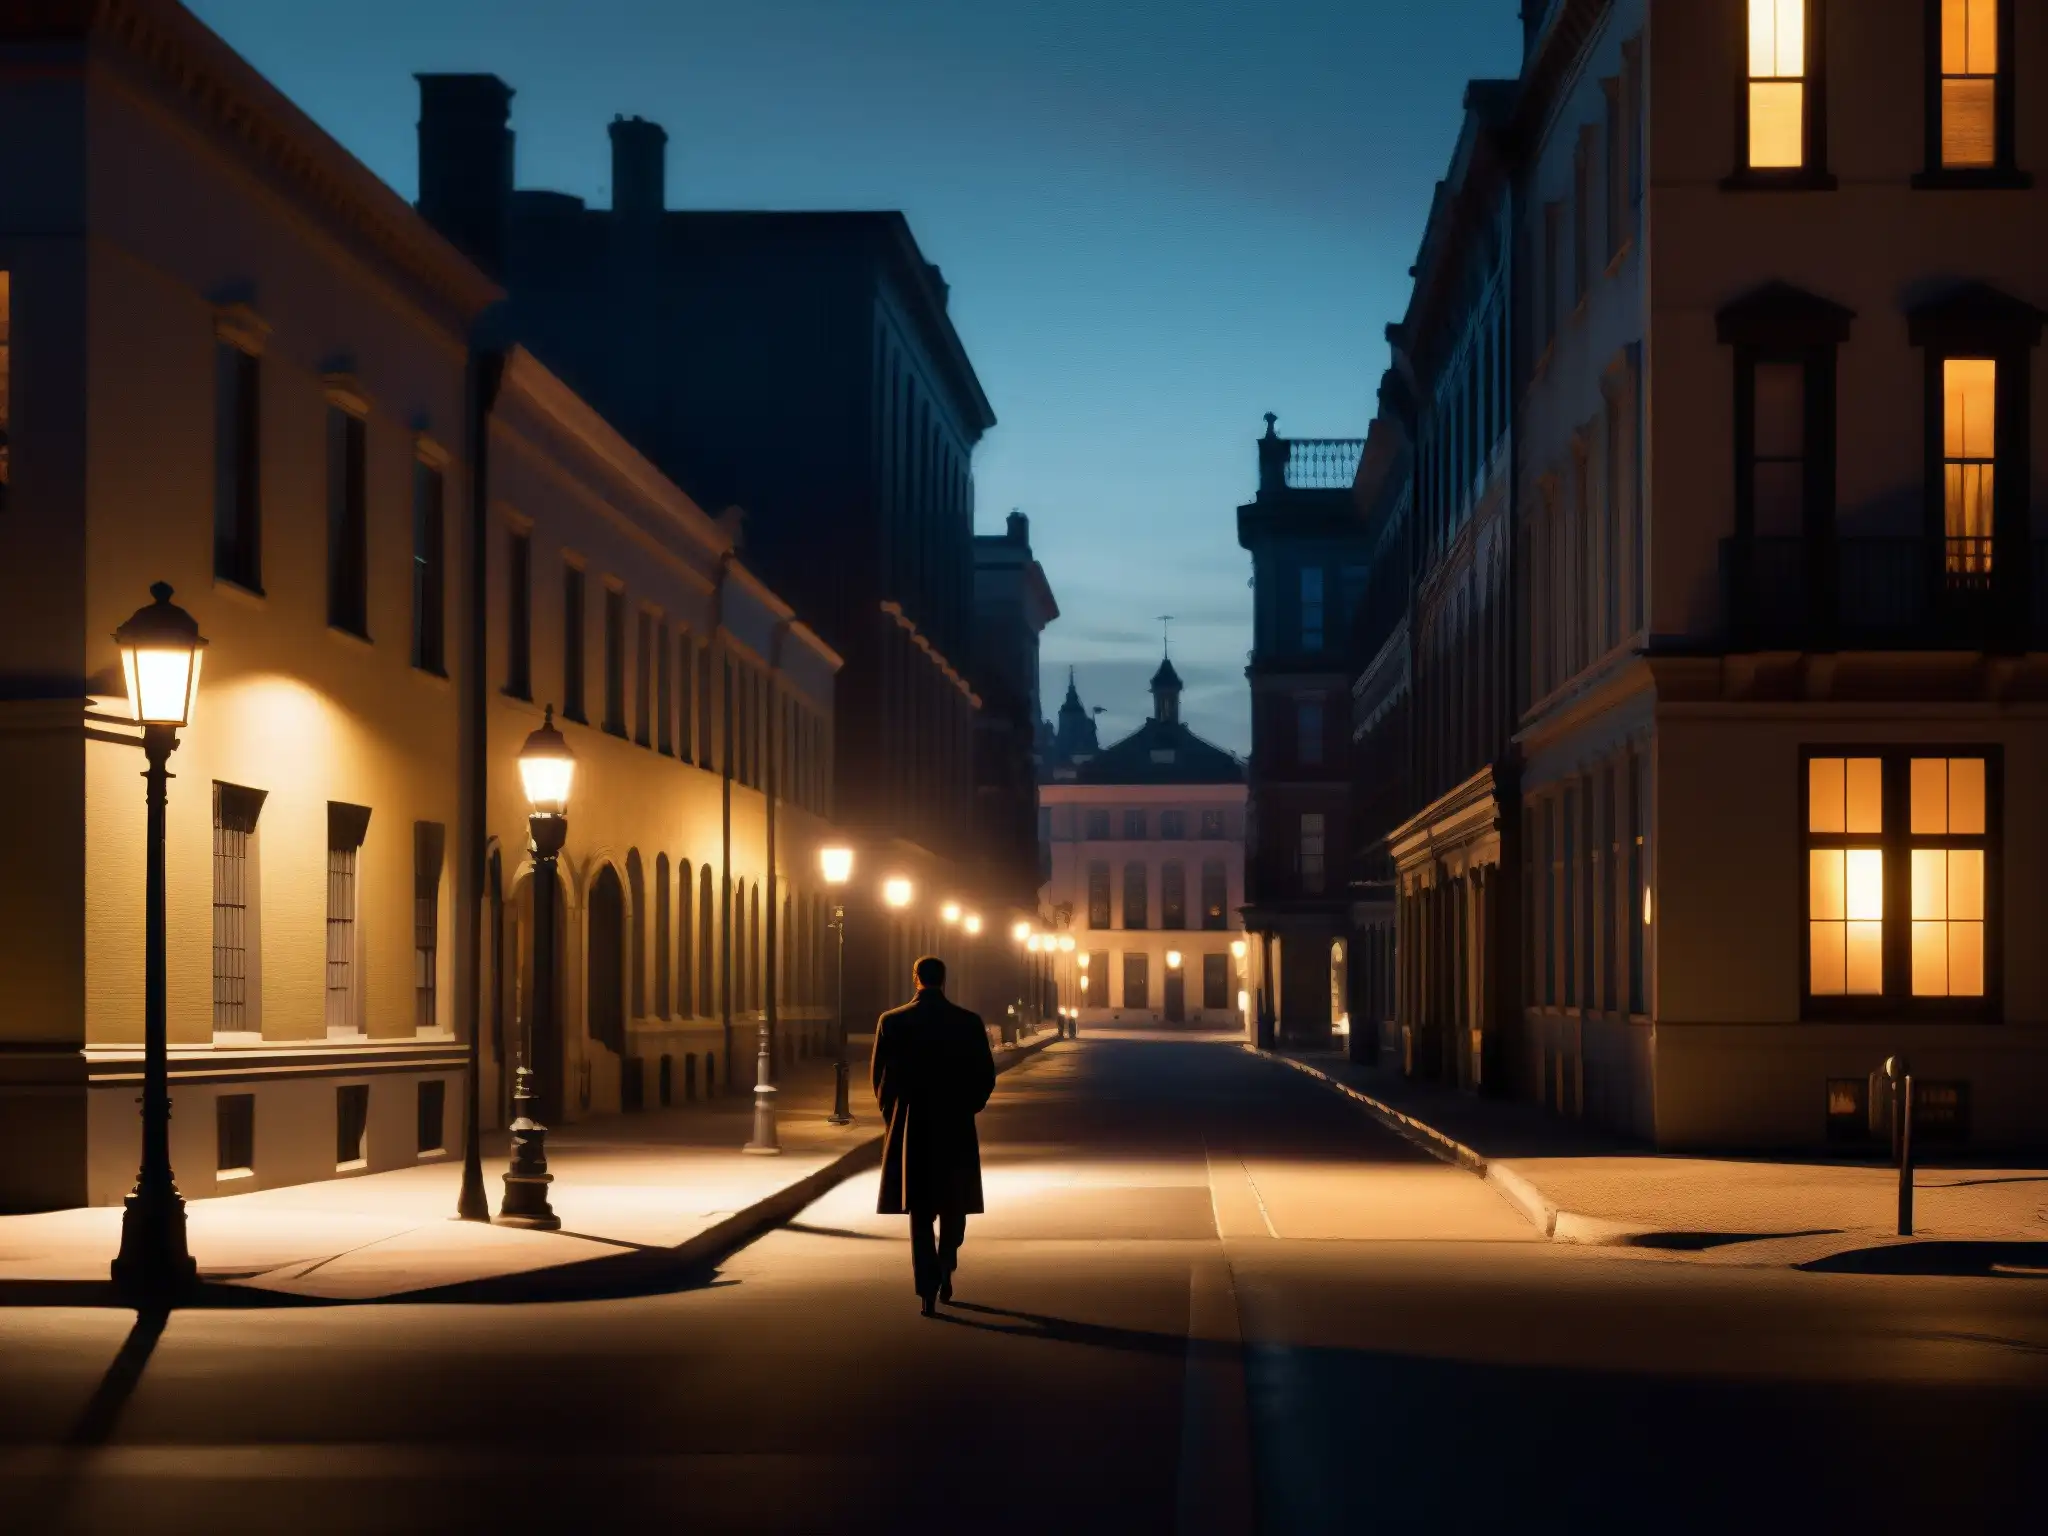 Contribución de leyendas urbanas a la narrativa: Solitario caminante en la misteriosa y ominosa calle nocturna de la ciudad